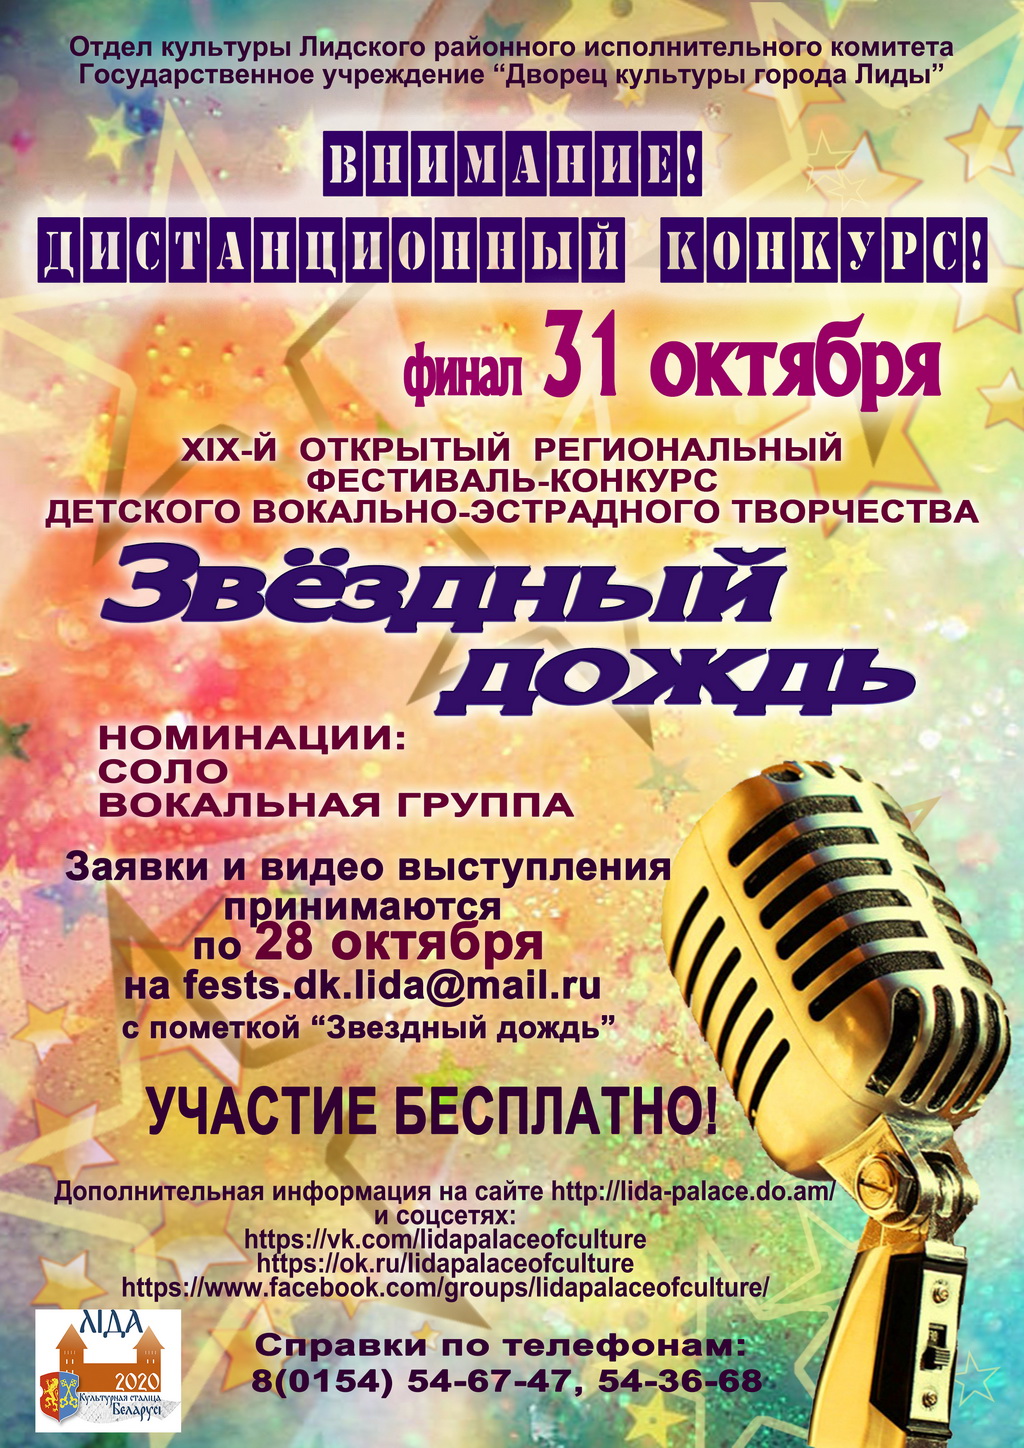 Открытый региональный фестиваль-конкурс детского вокально-эстрадного творчества «Звездный дождь» пройдет дистанционно. 